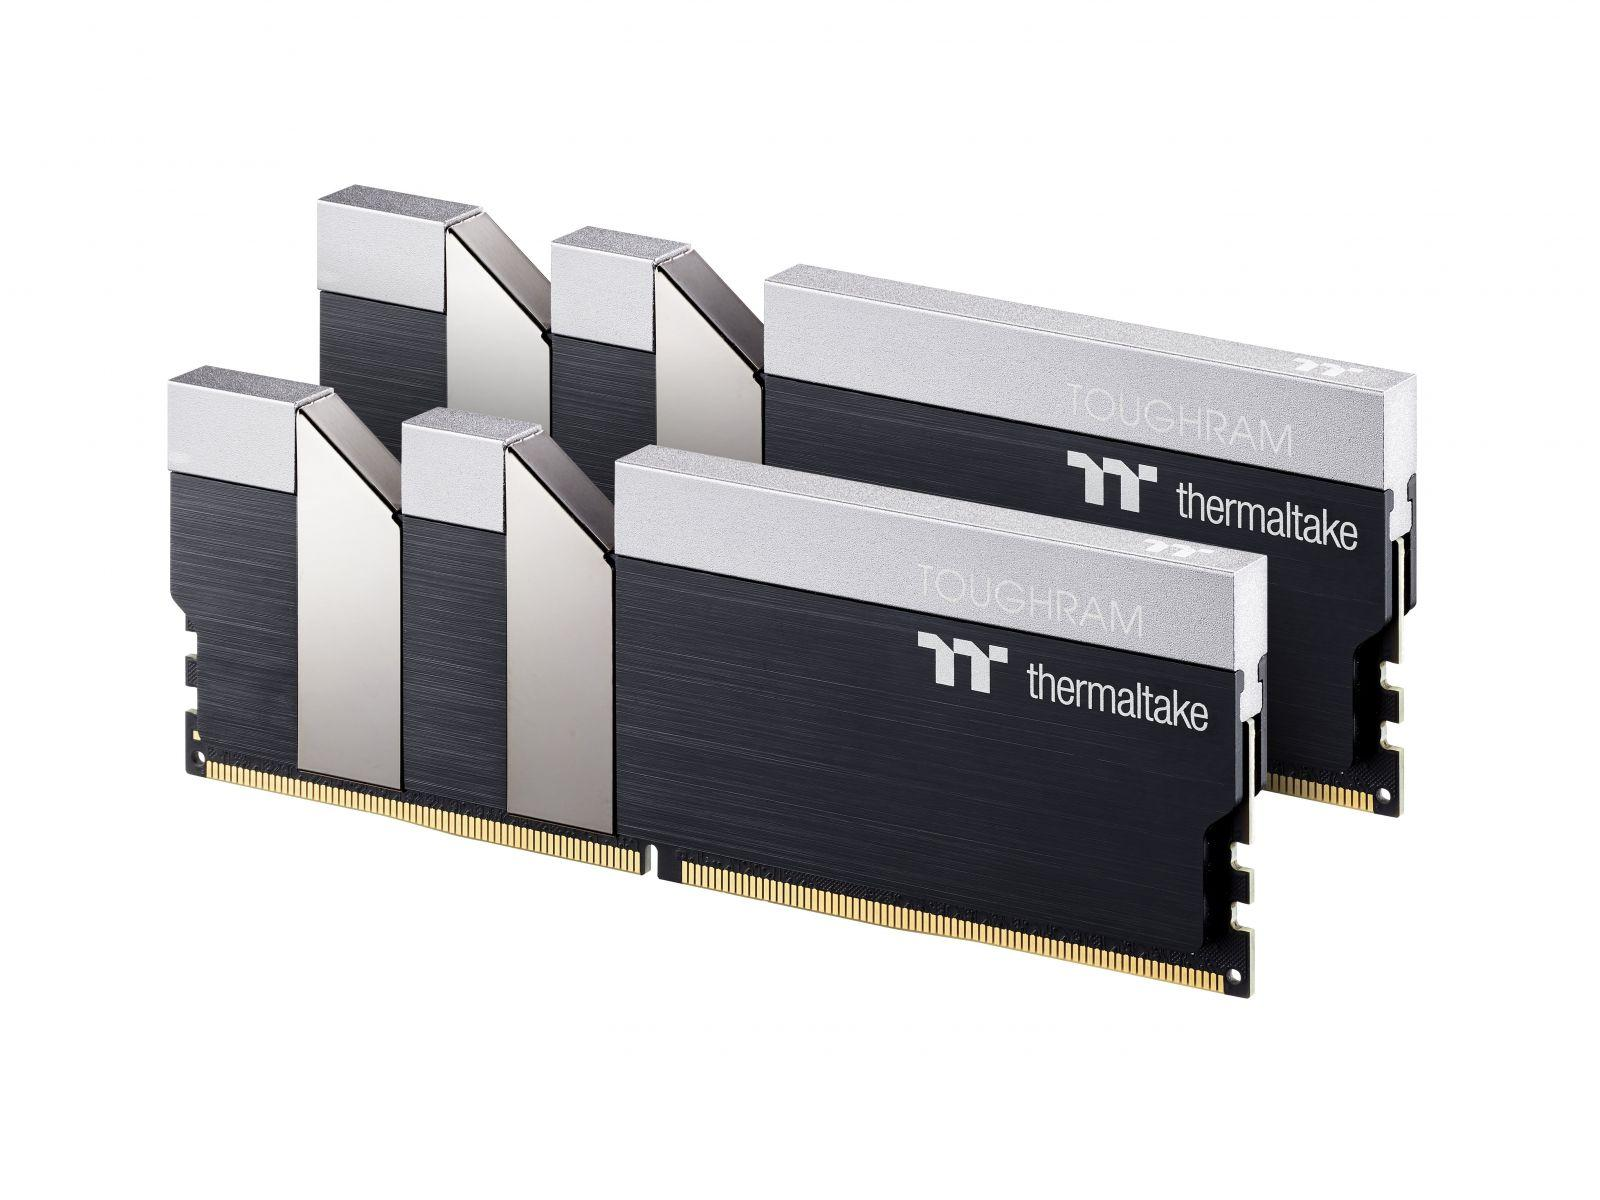 THERMALTAKE TOUGHRAM BLACK Arbeitsspeicher DDR4 16 GB